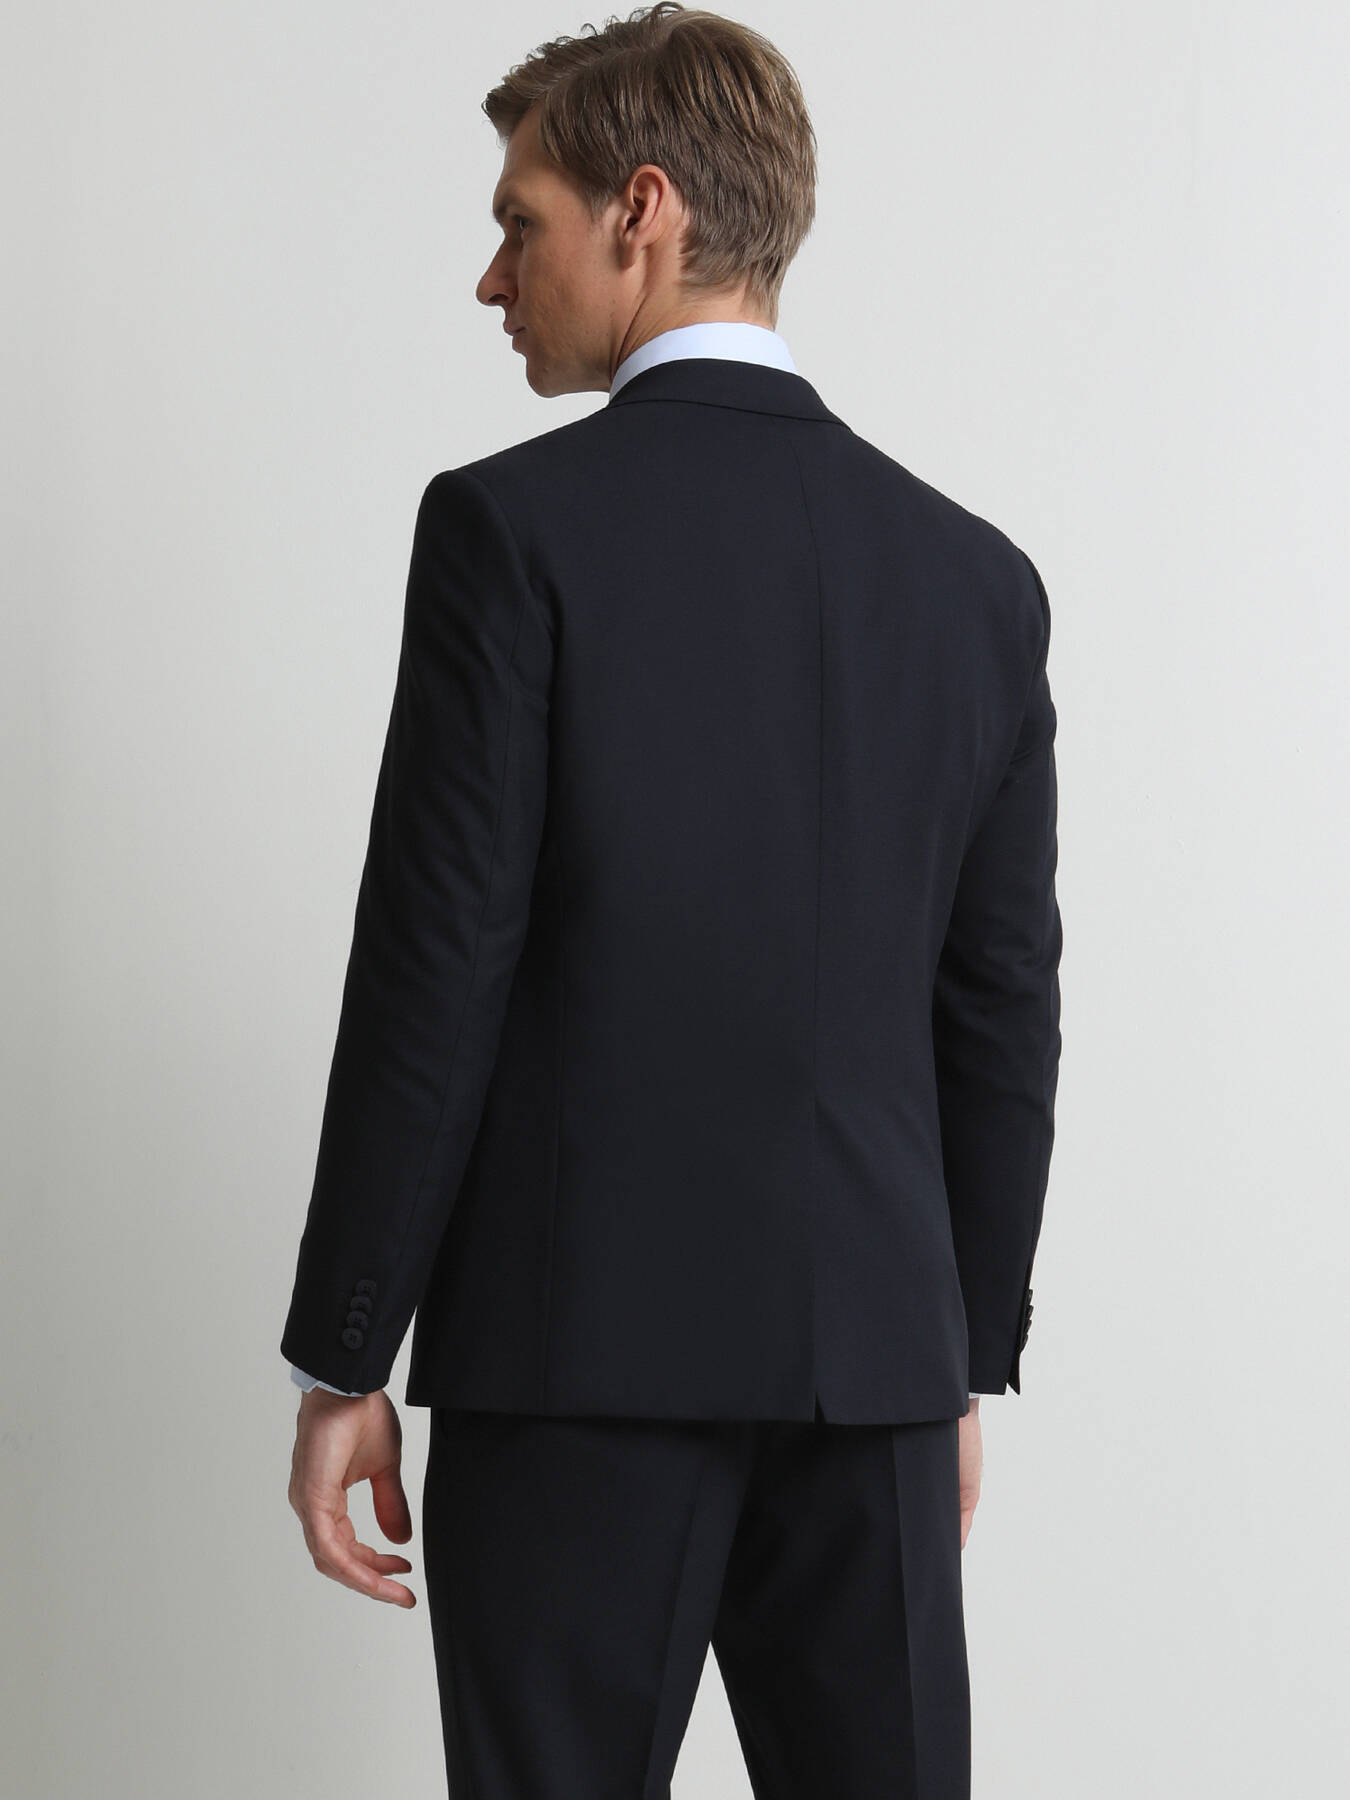 discount 98% Zara Suit jacket Gray 52                  EU MEN FASHION Suits & Sets Basic 